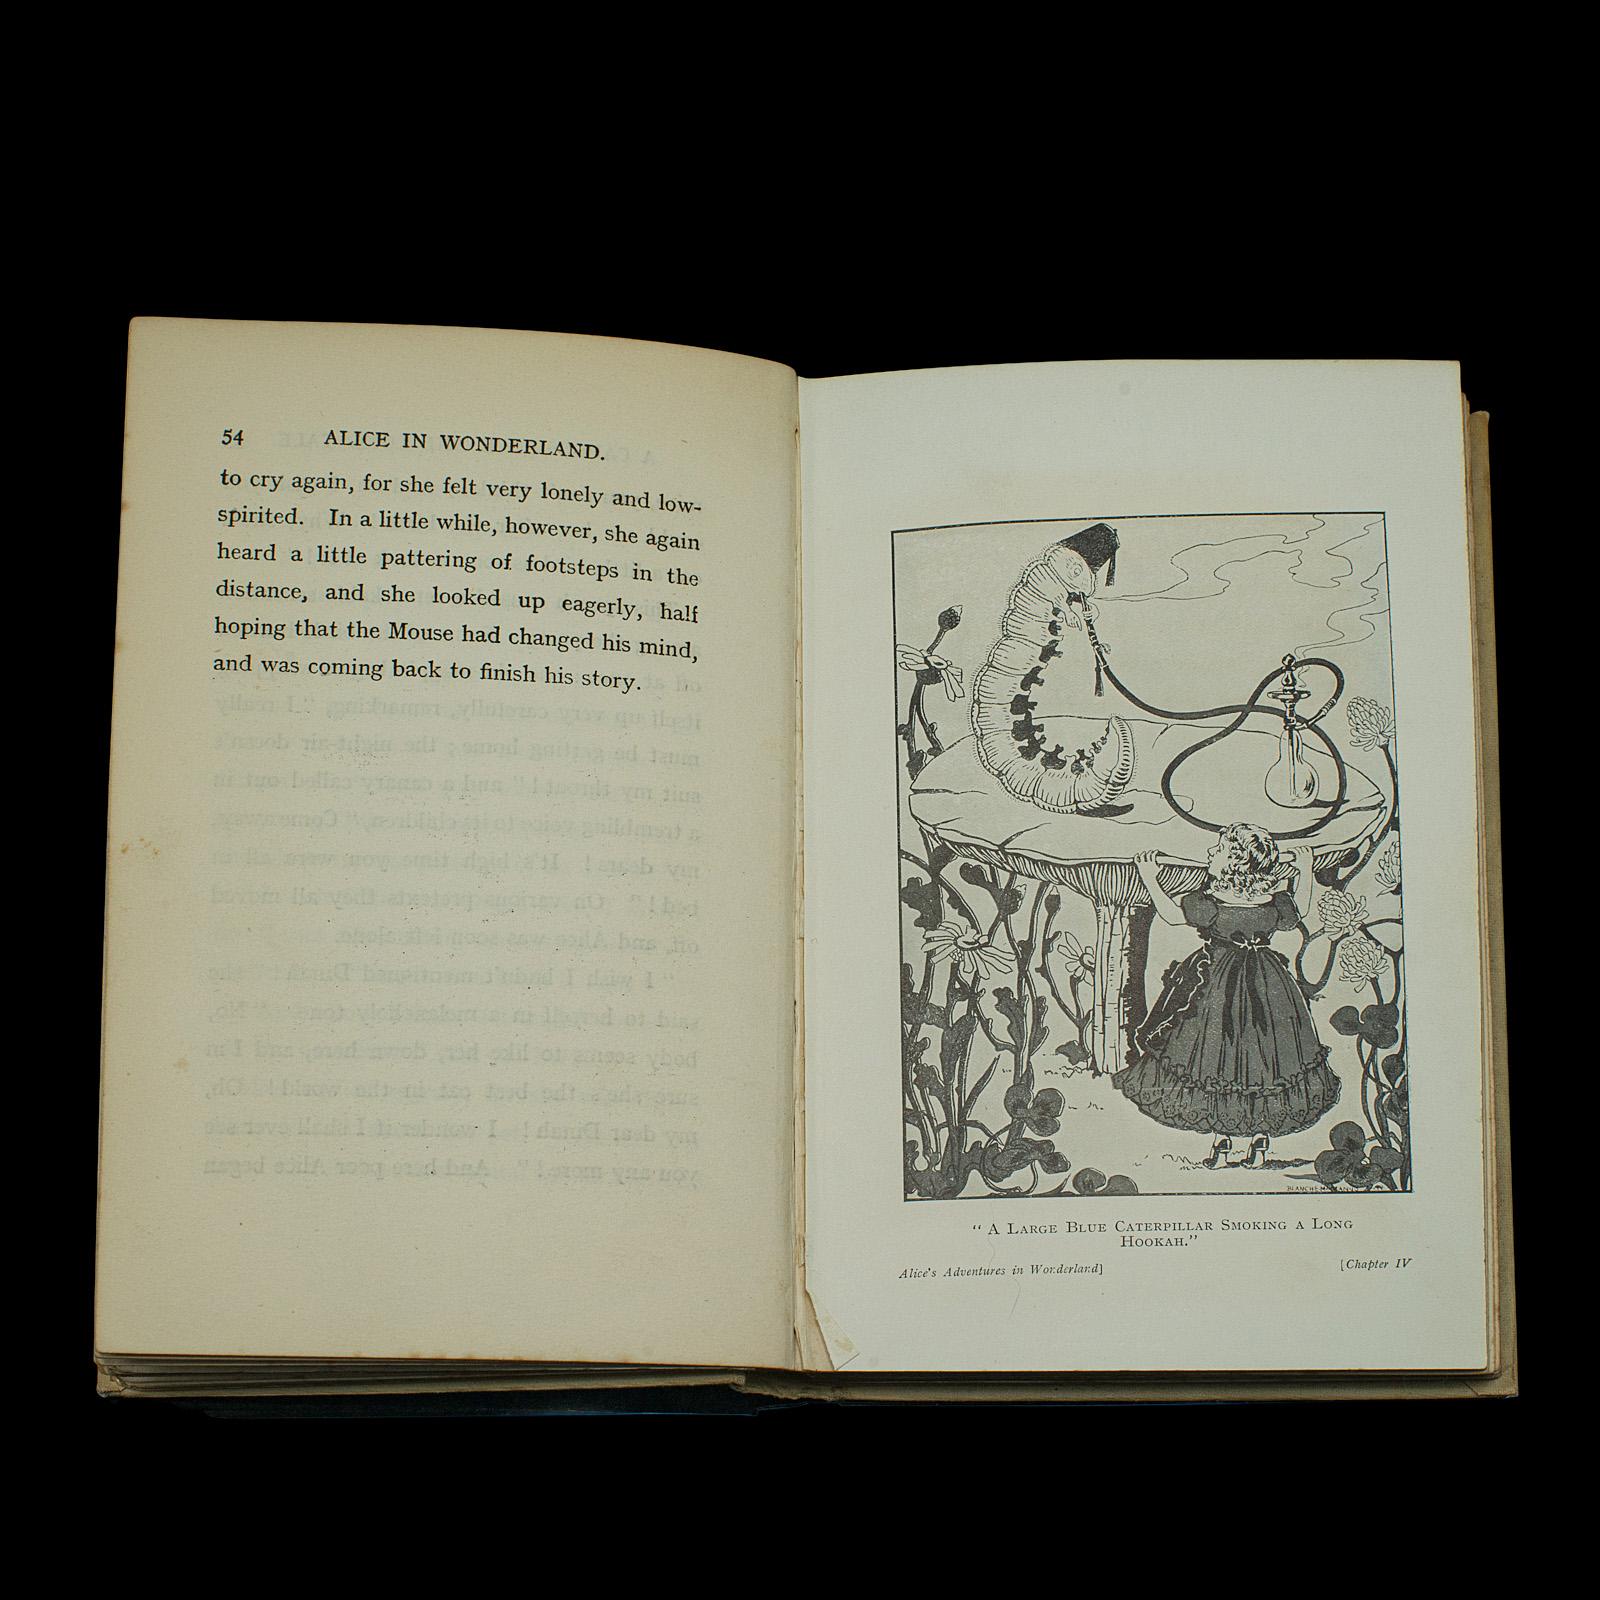 alice in wonderland vintage book